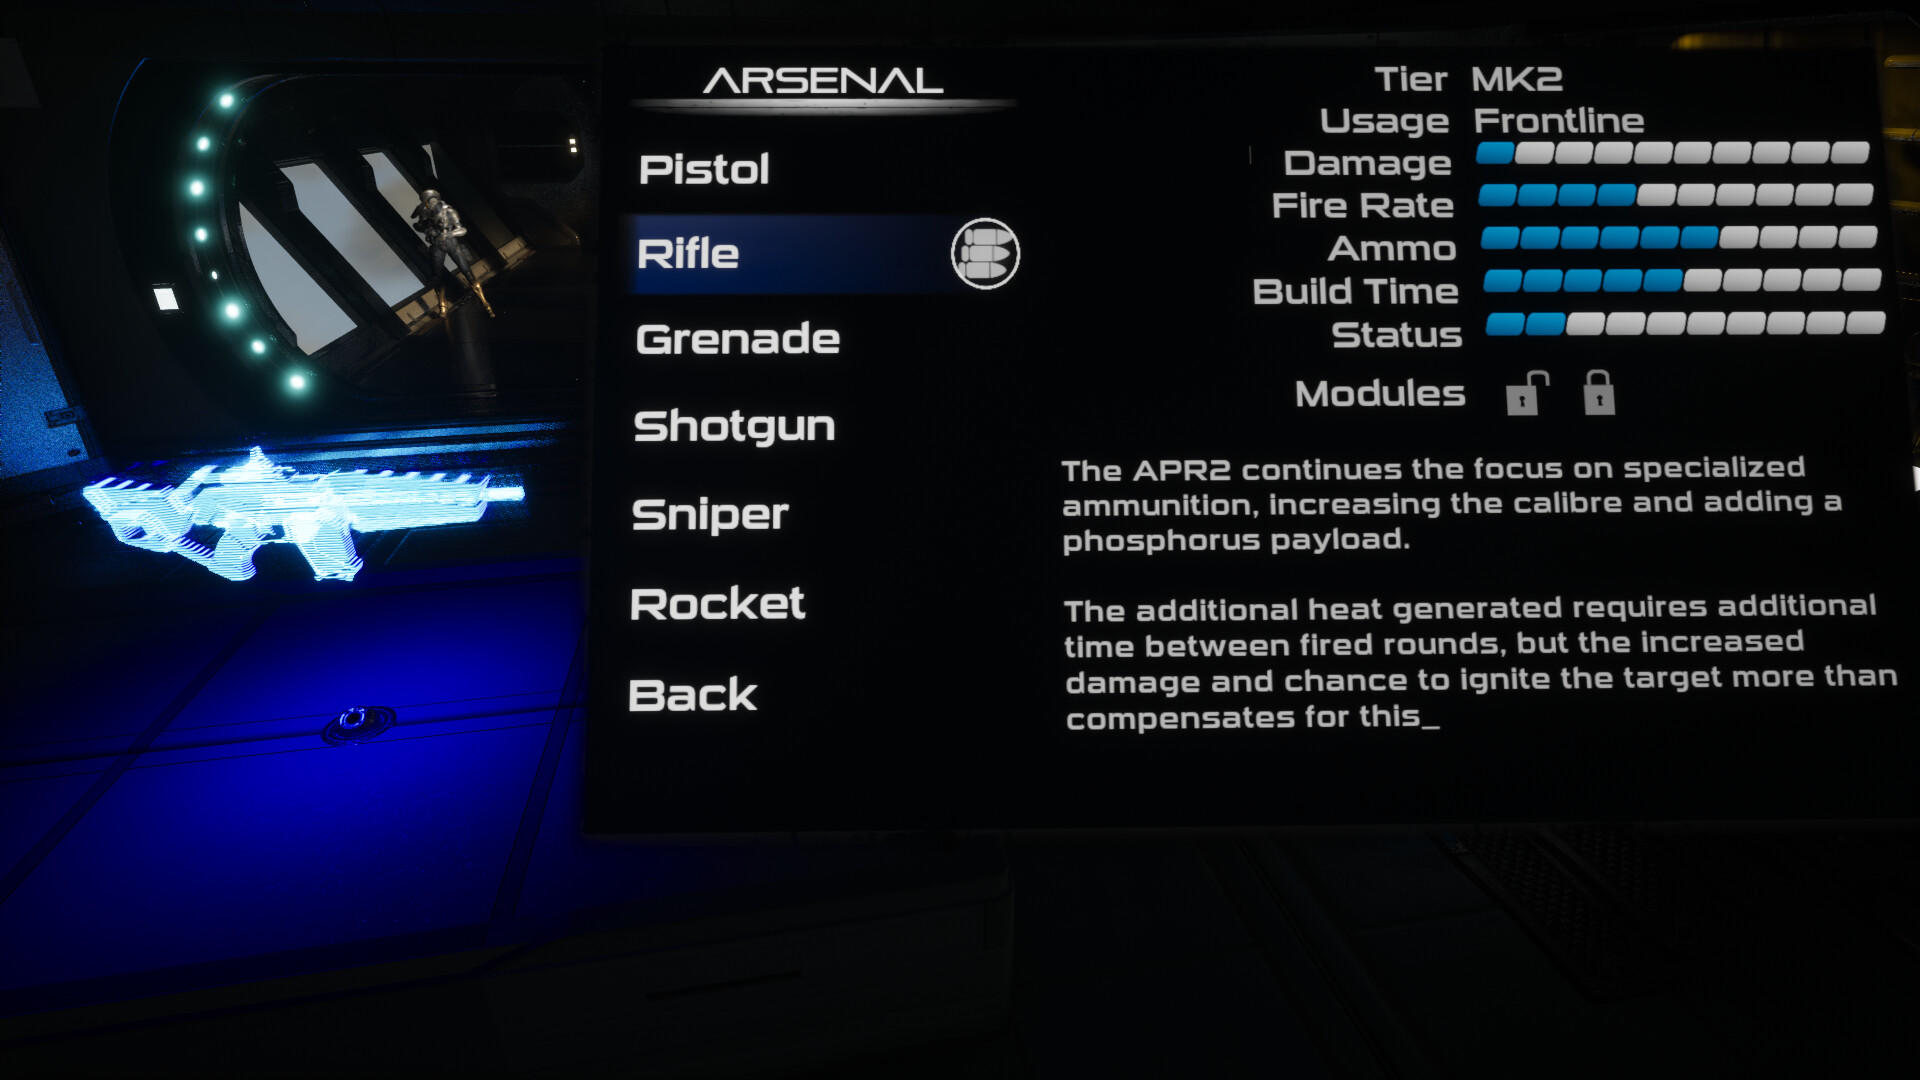 Terra Exodus screenshot game